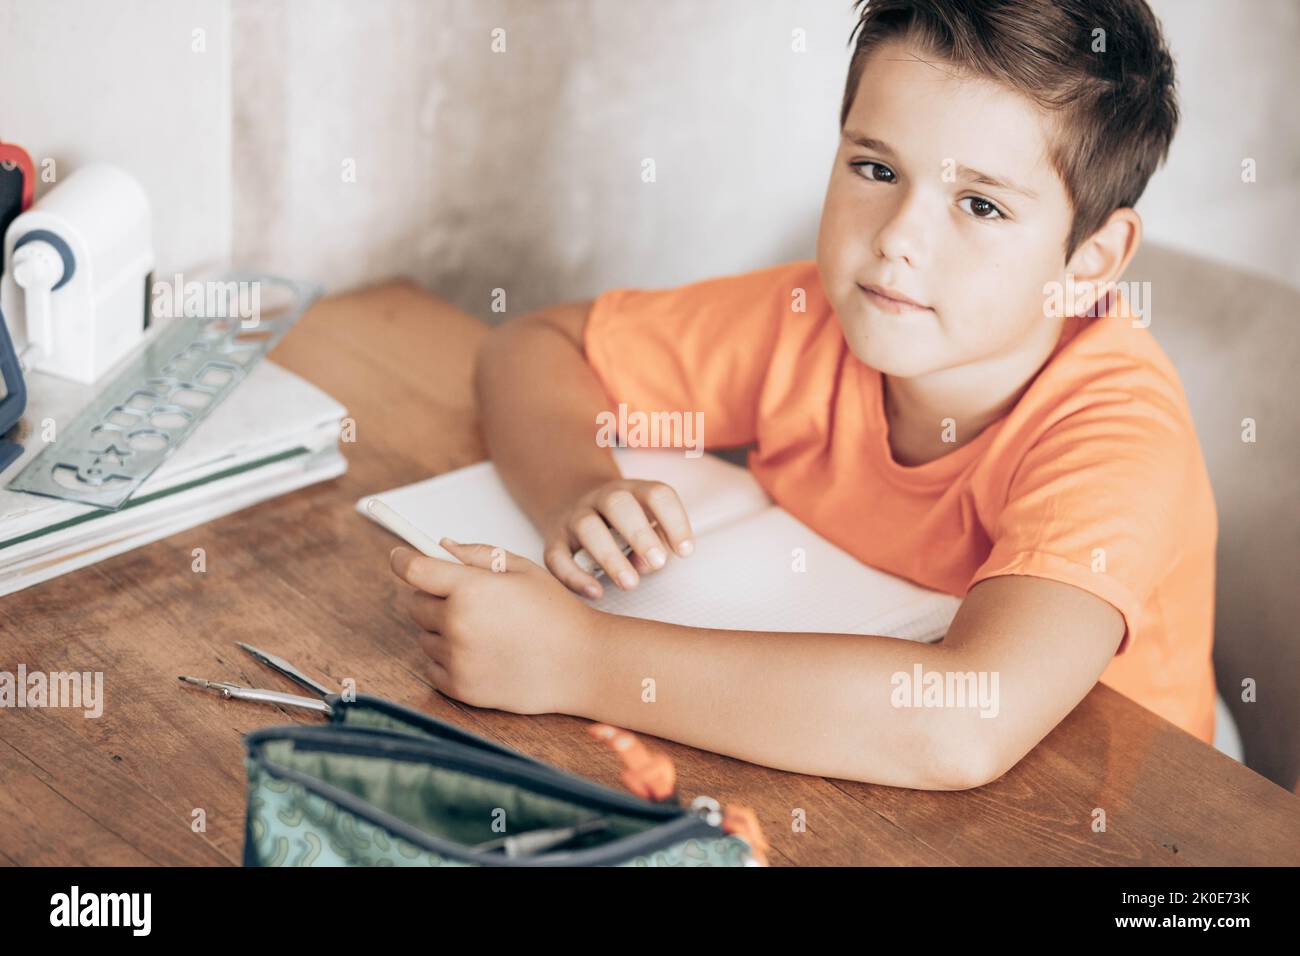 Petit garçon d'école faisant des devoirs, assis à la table Banque D'Images